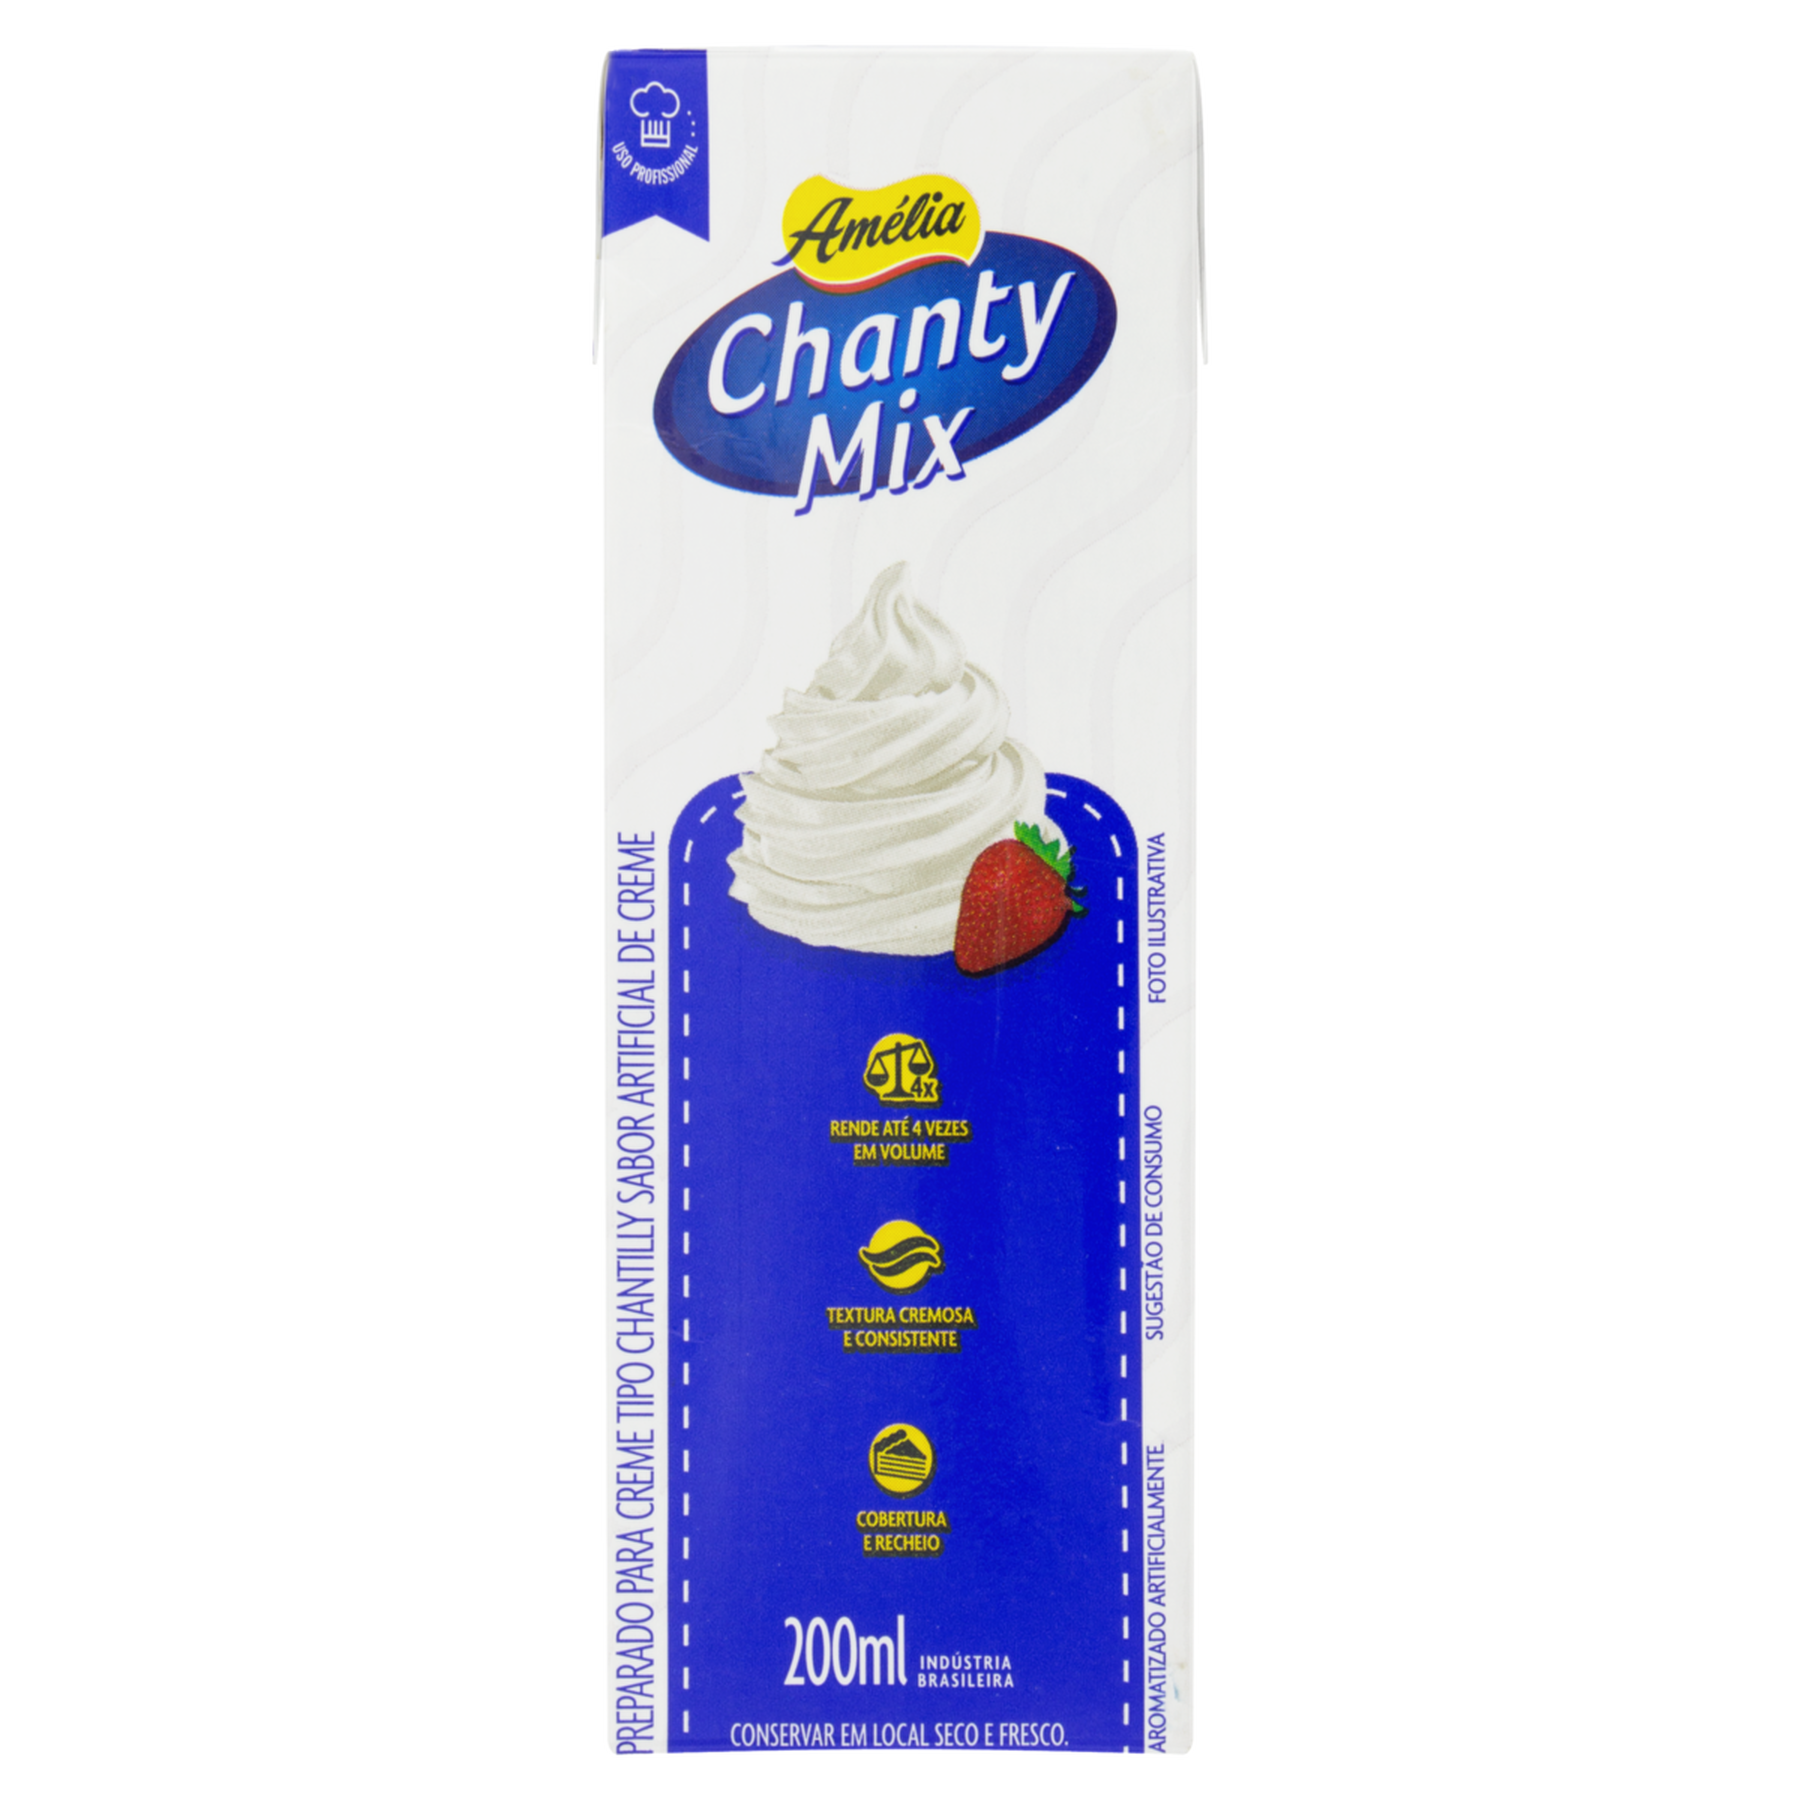 Chantilly Chanty Mix Amélia Caixa 200ml